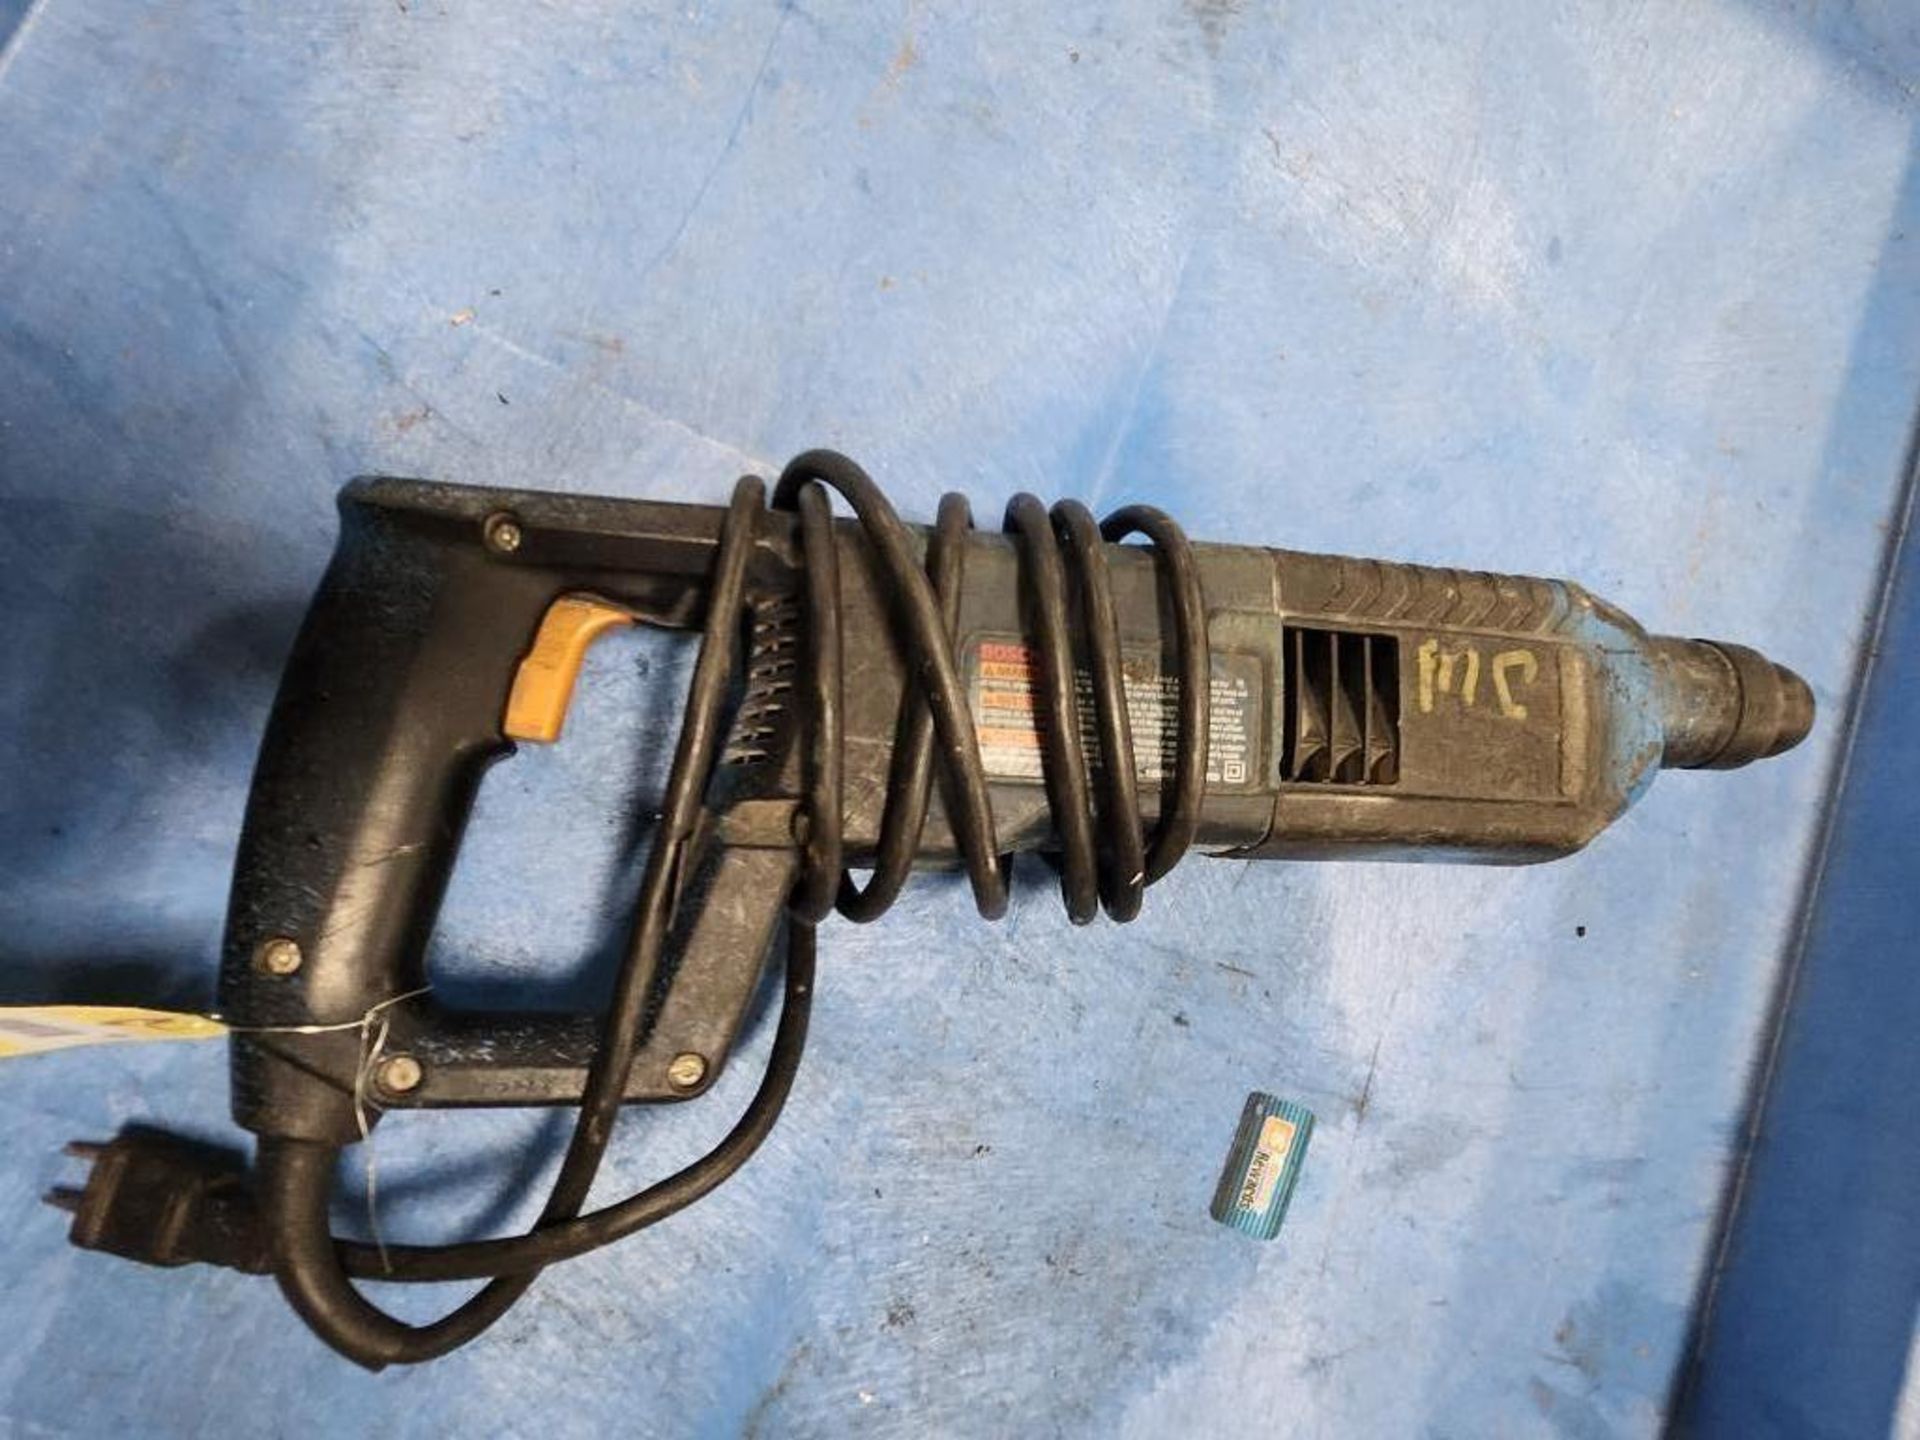 Bosch Bulldog Hammer Drill, Model 11224VSR - Image 2 of 4